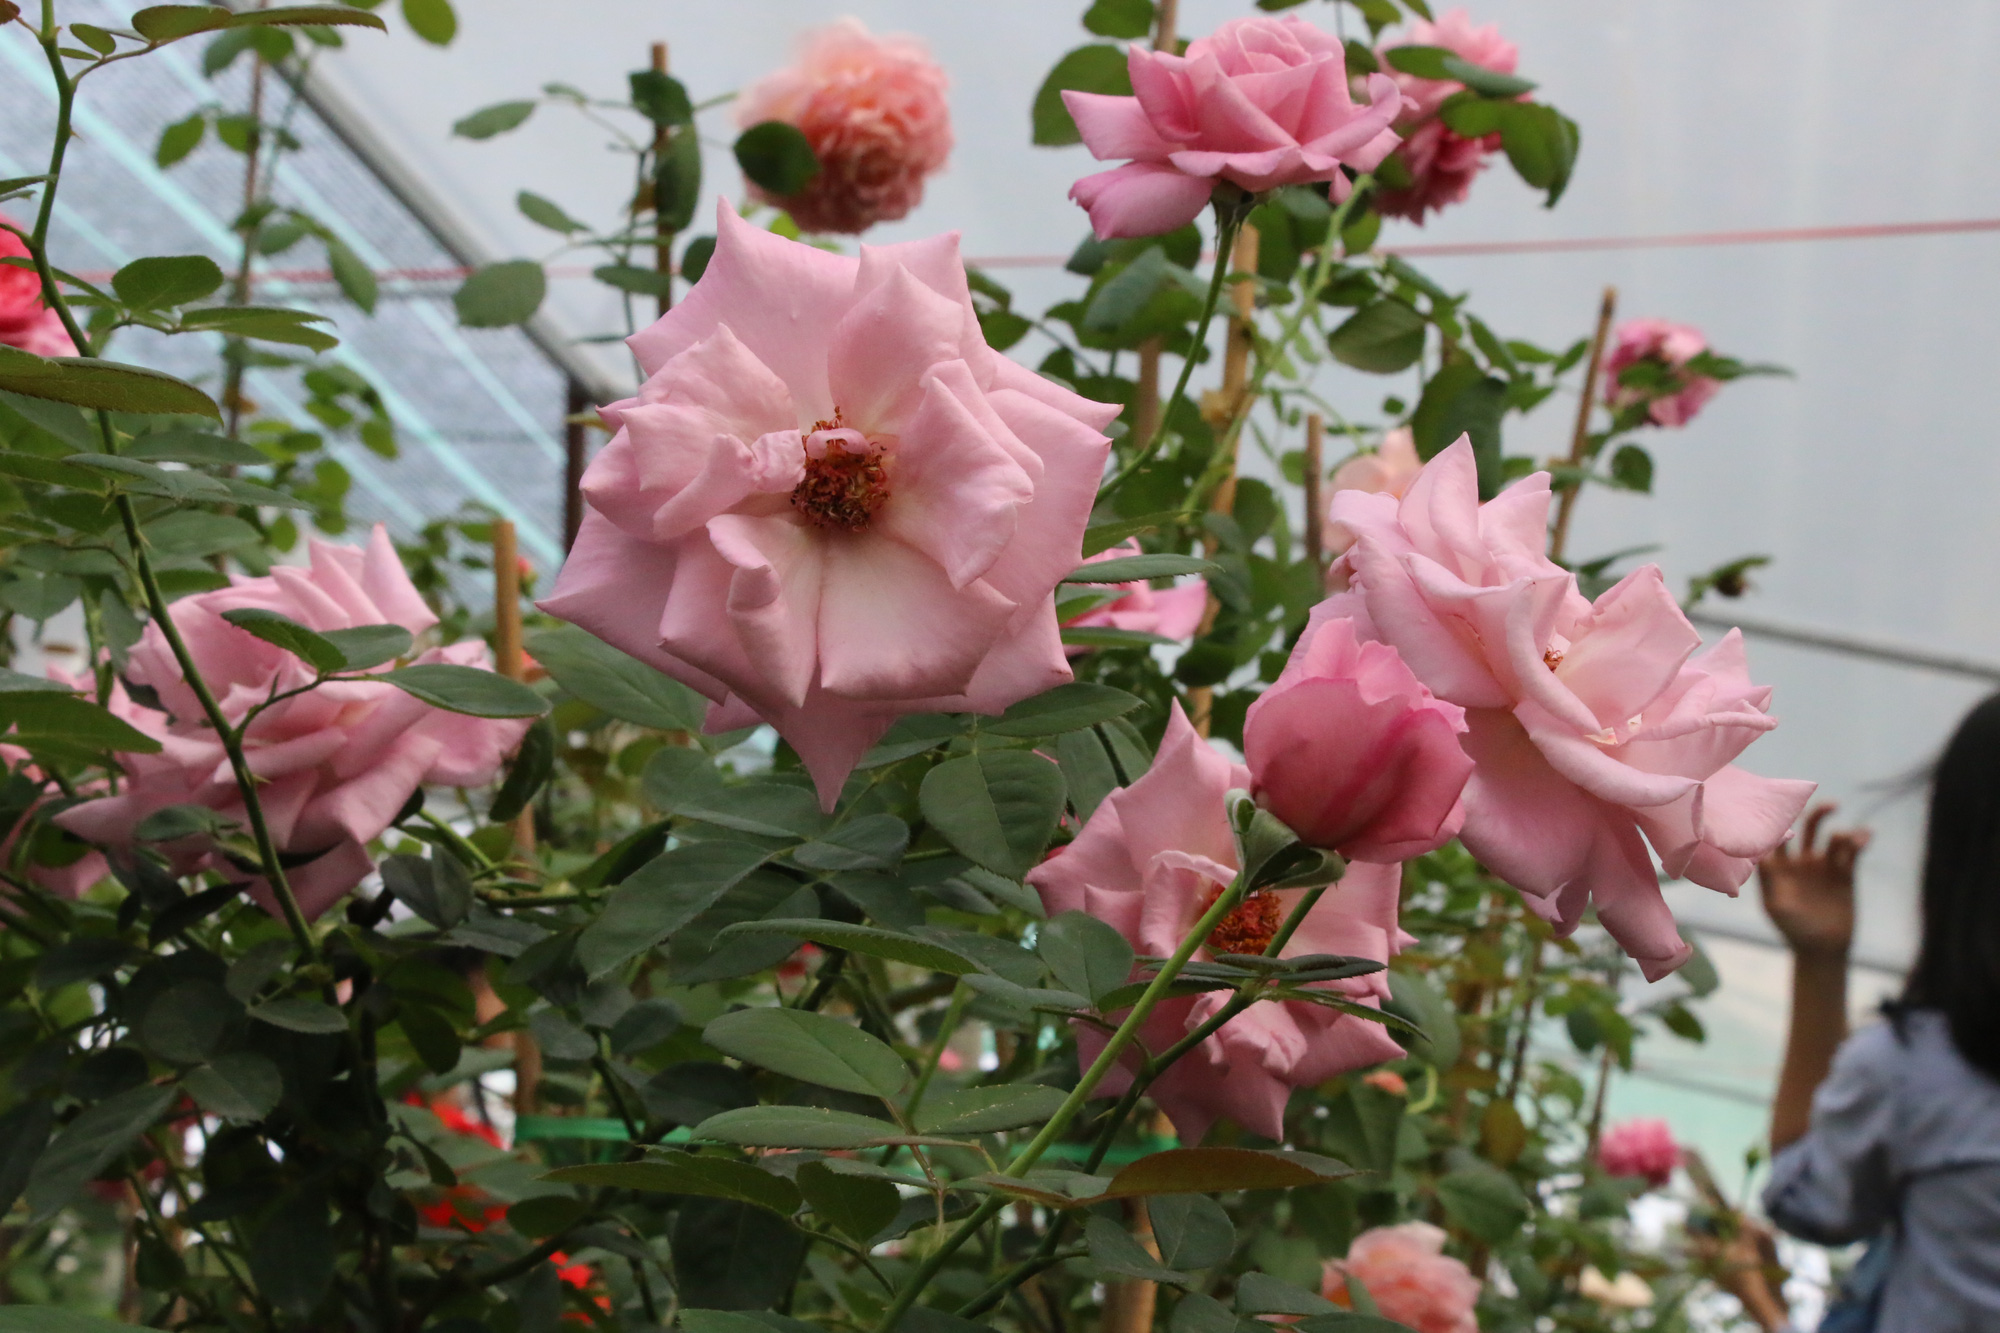 “Ngất ngây” với vườn hoa hồng Pháp tuyệt đẹp được tham quan miễn phí dịp Tết - Ảnh 5.